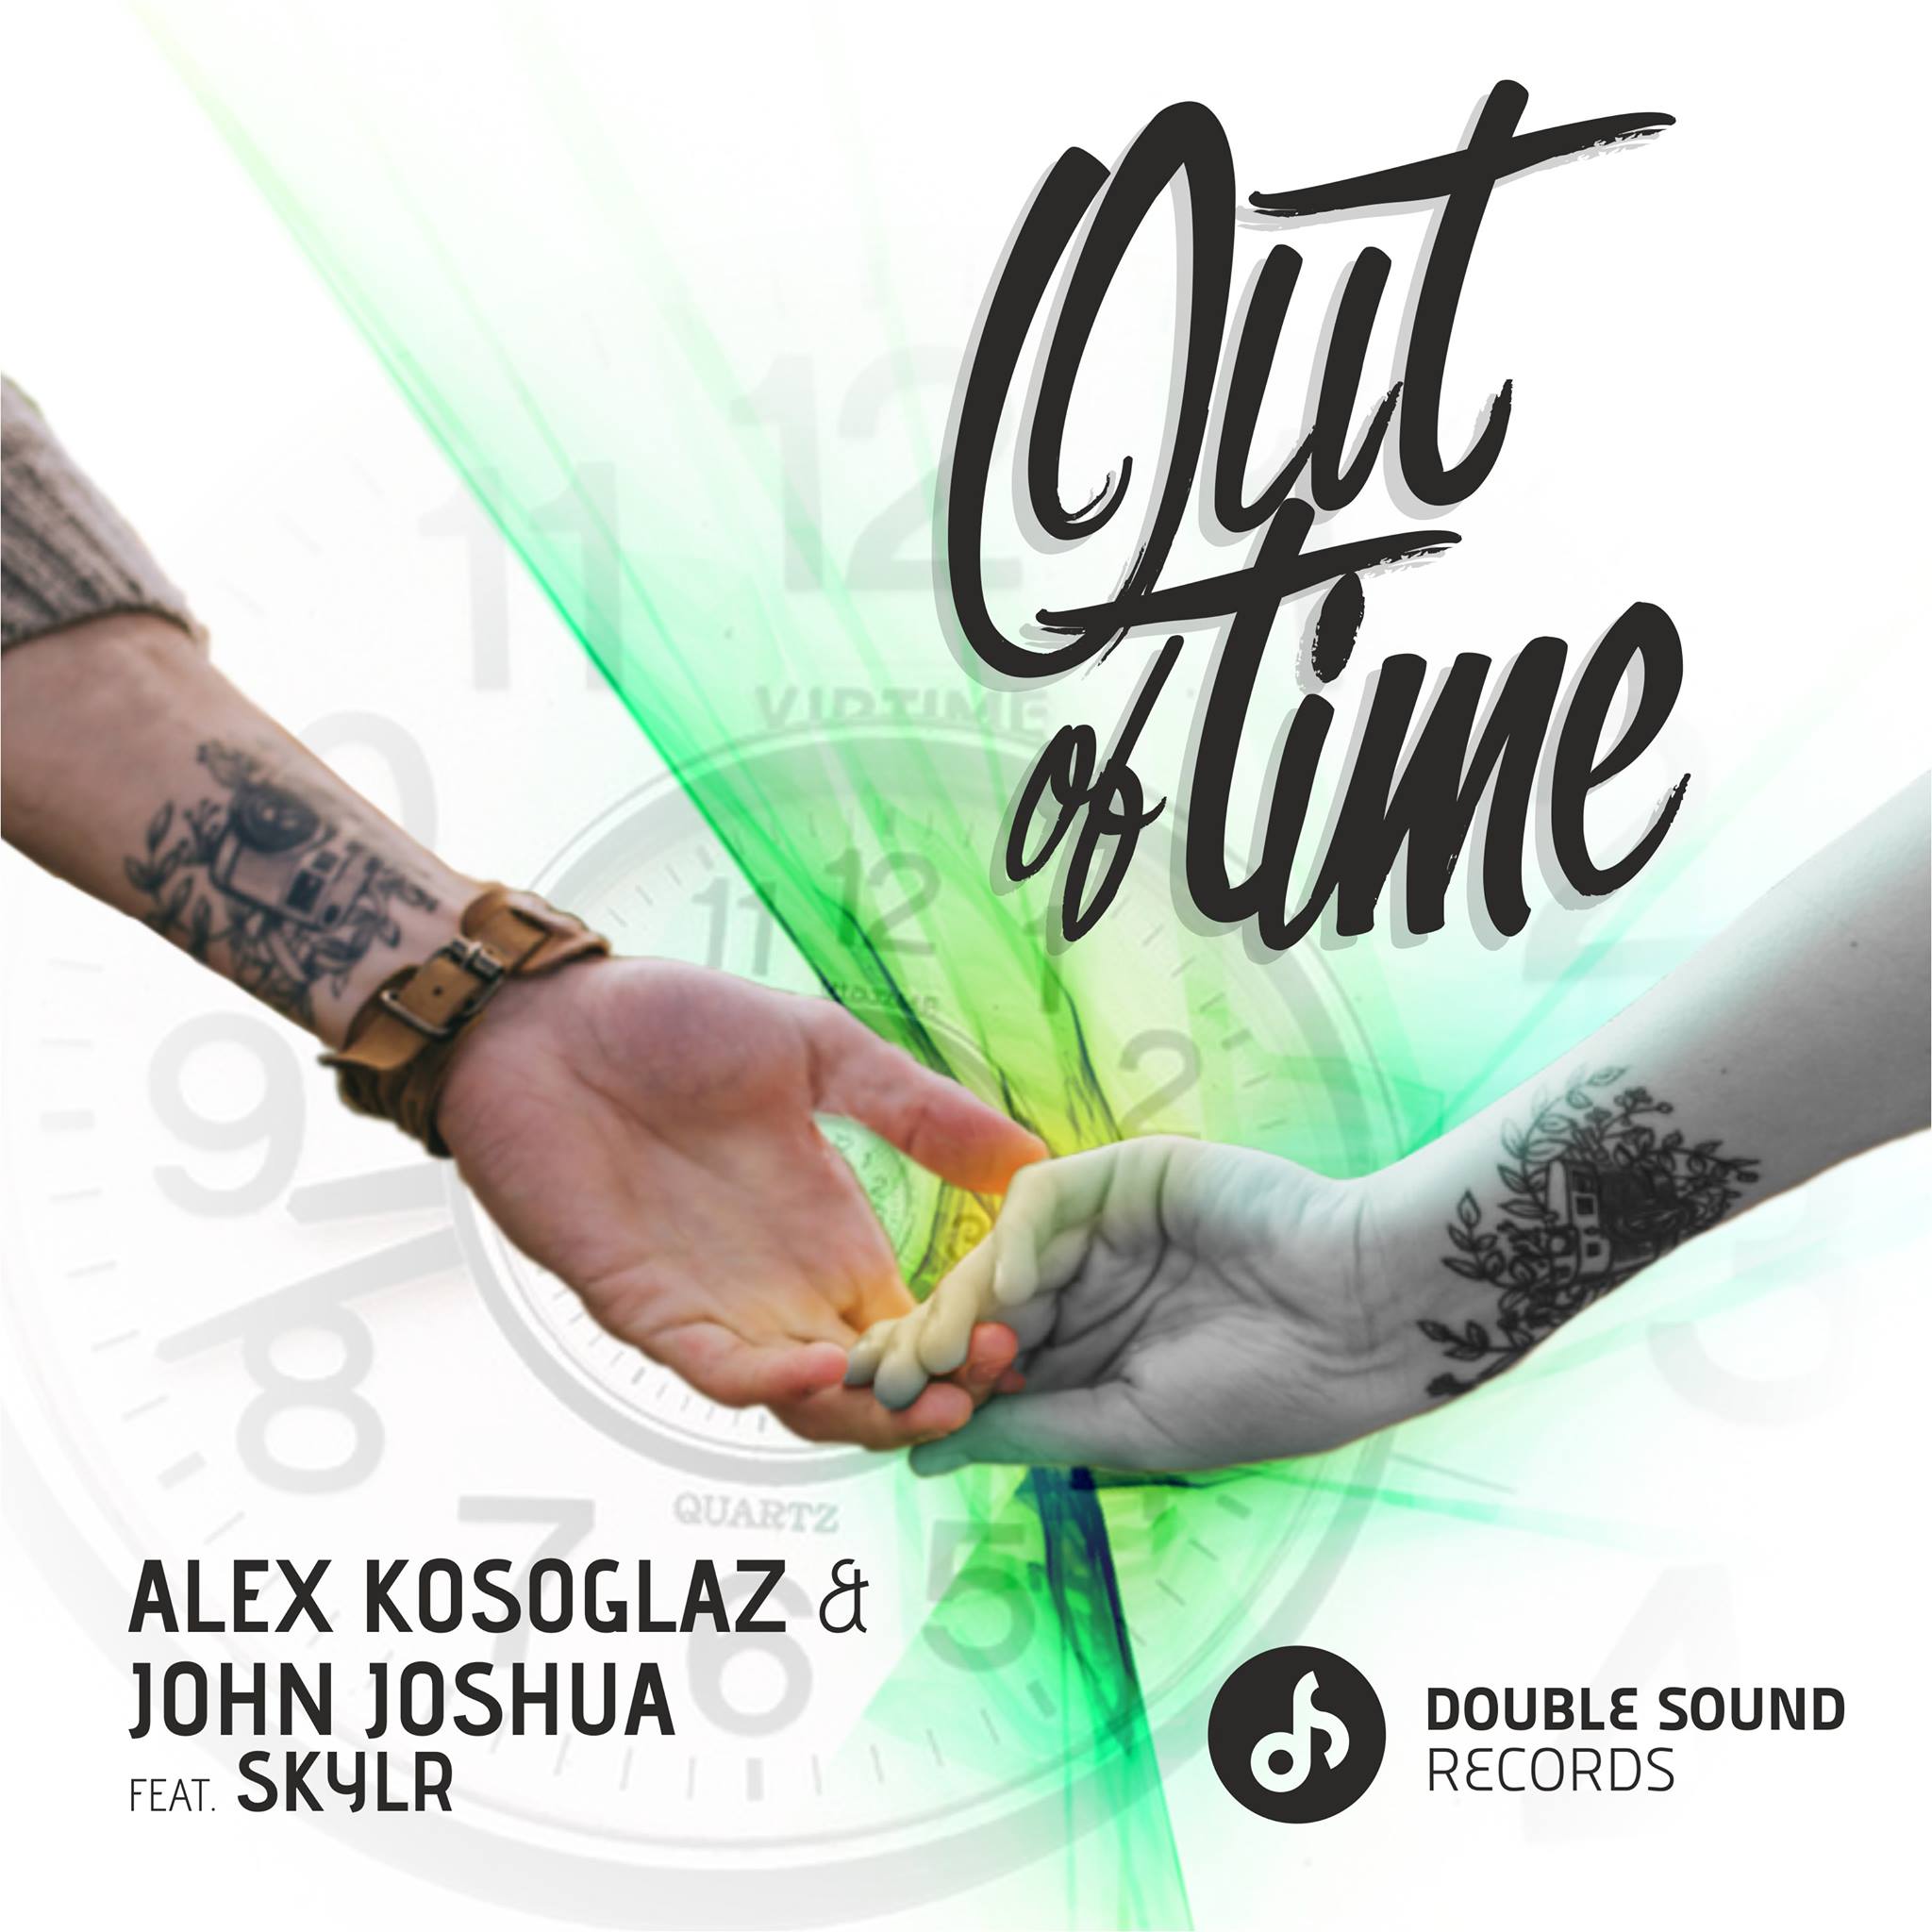 [HOUSE] ALEX KOSOGLAZ & JOHN JOSHUA FEAT. SKYLR – “OUT OF TIME”